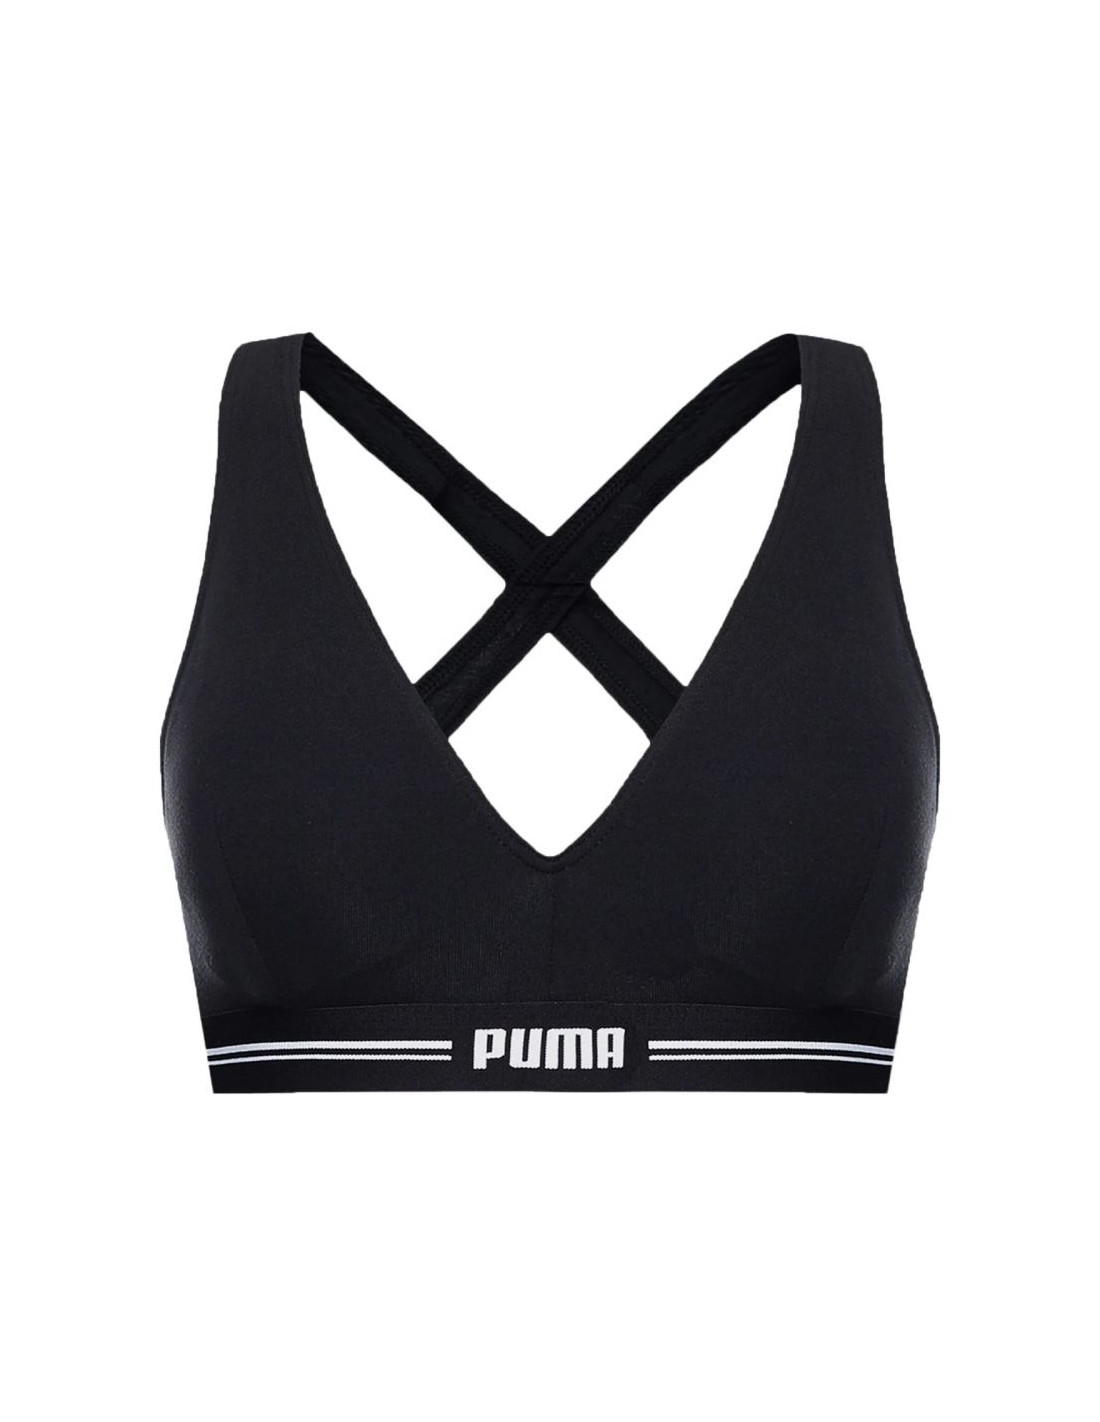 Puma Padded Top 1p W sports bra 938185 01 (XL)